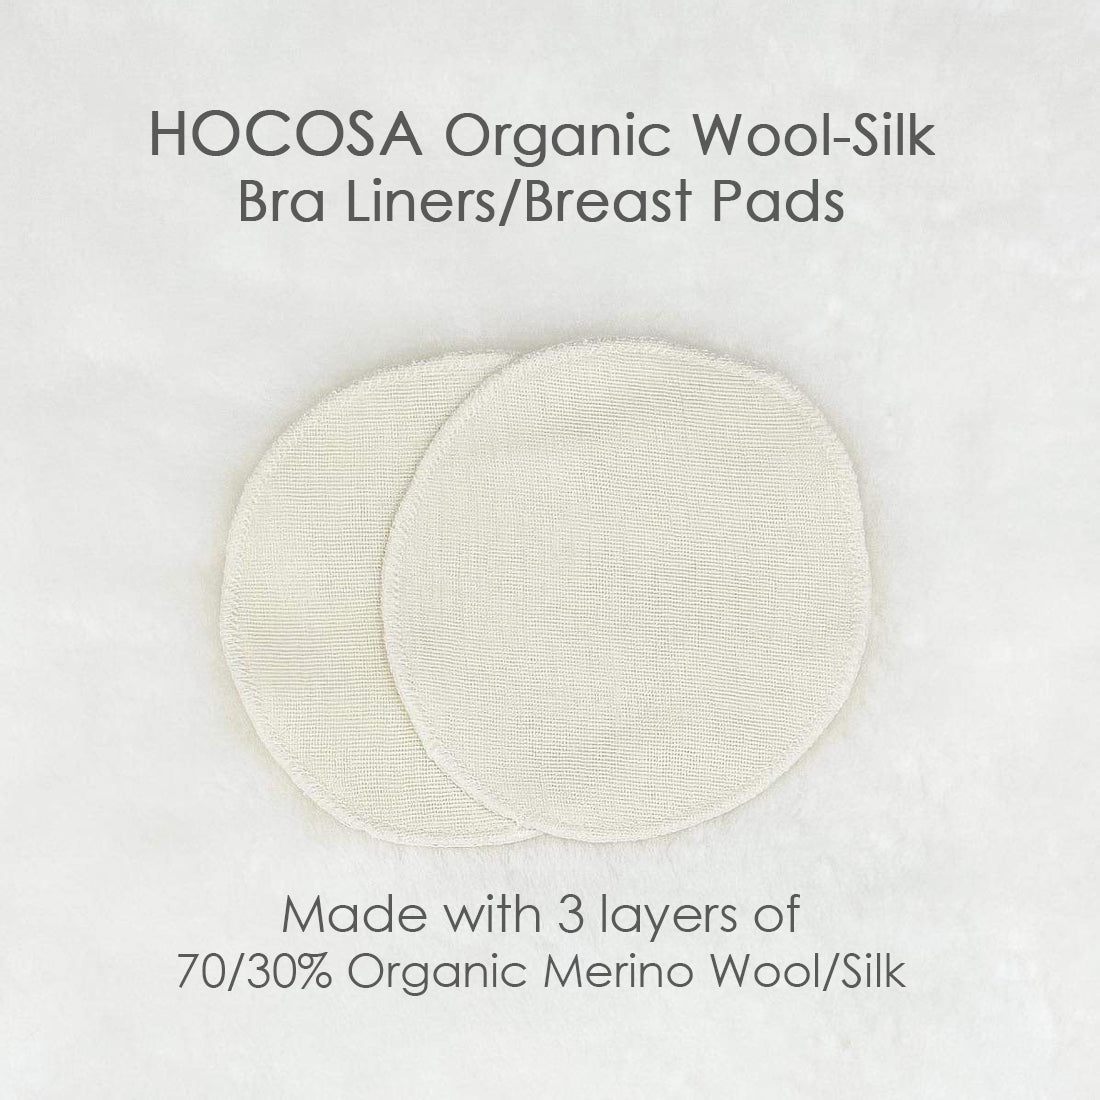 HOCOSA Wool-Silk Bra Liners – Danish Woolen Delight